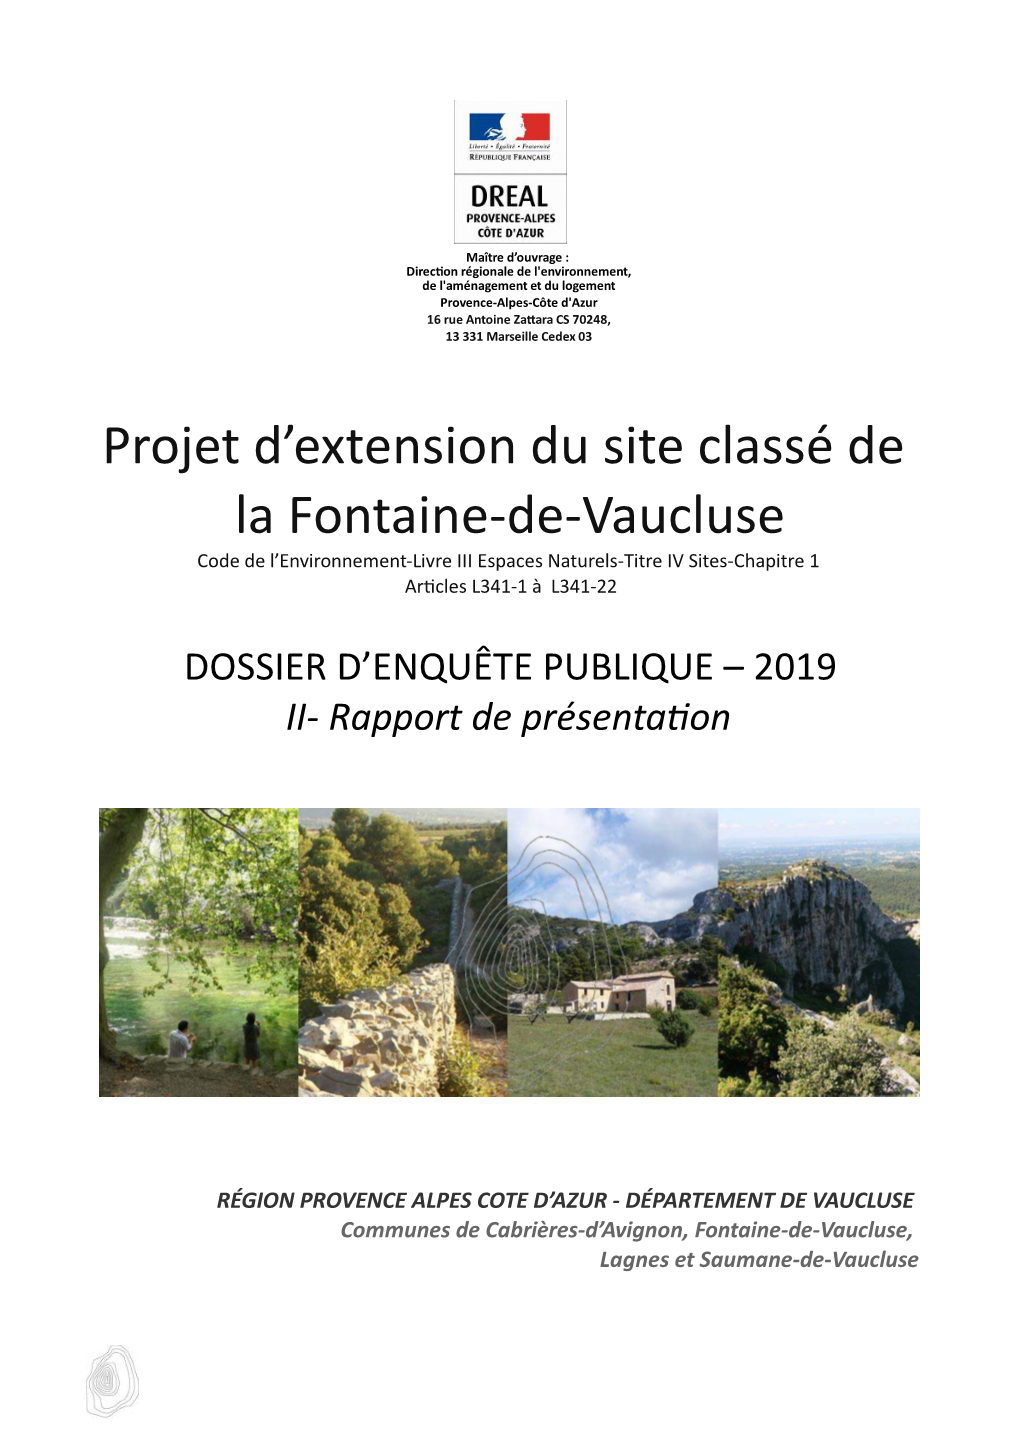 Projet D'extension Du Site Classé De La Fontaine-De-Vaucluse